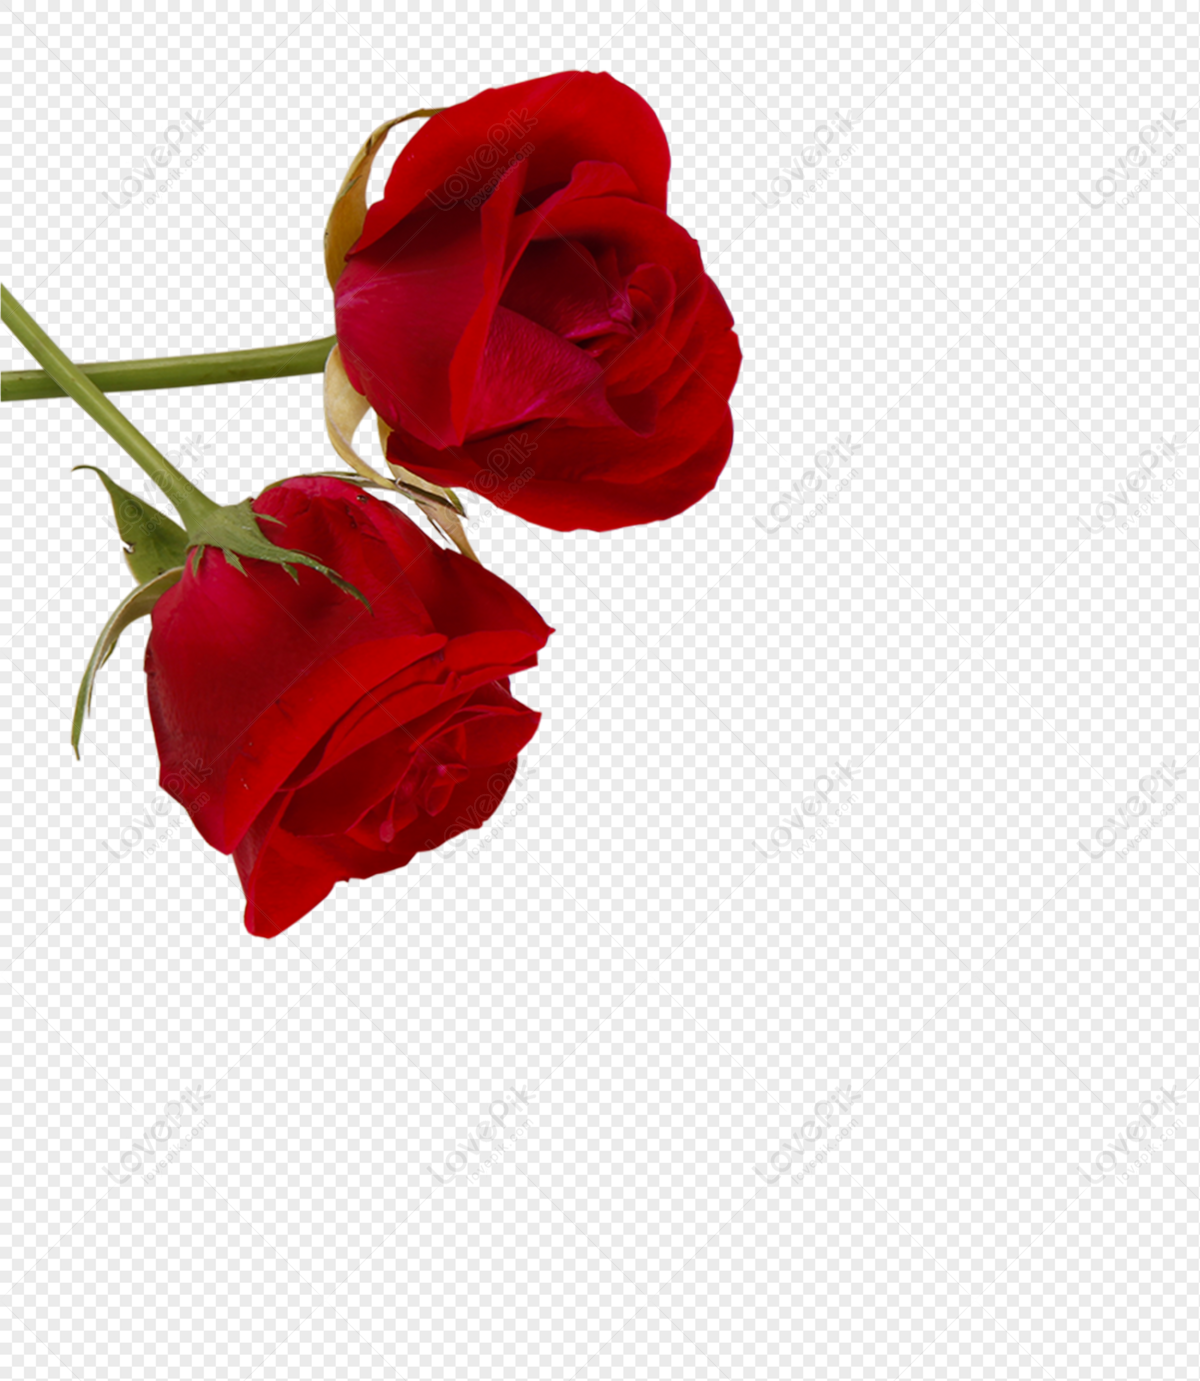 Với hình ảnh hoa hồng PNG, bạn có thể biến mọi thiết kế của mình trở nên sinh động hơn bao giờ hết. Những bông hoa hồng xinh đẹp và tự nhiên sẽ giúp cho mọi sáng tạo của bạn trở nên hoàn hảo hơn. Hãy chiêm ngưỡng vẻ đẹp đầy nữ tính của chúng ngay từ bây giờ.